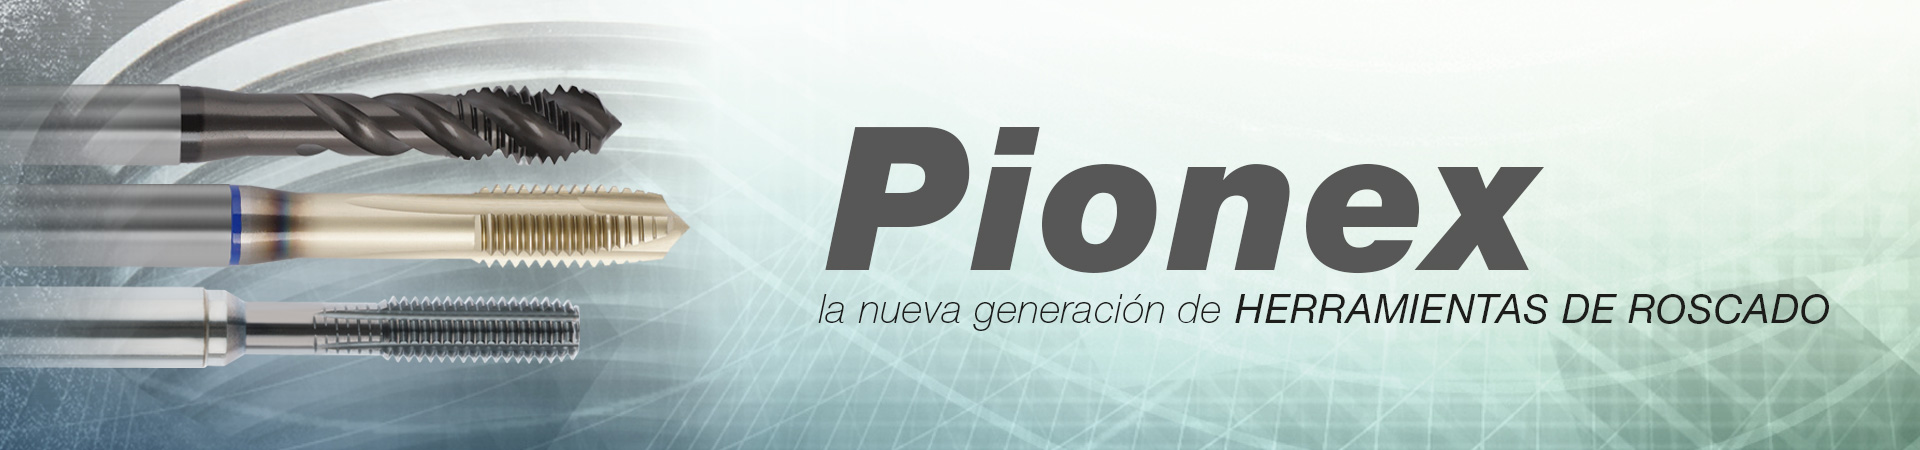 Pionex: la nueva generación de HERRAMIENTAS DE ROSCADO